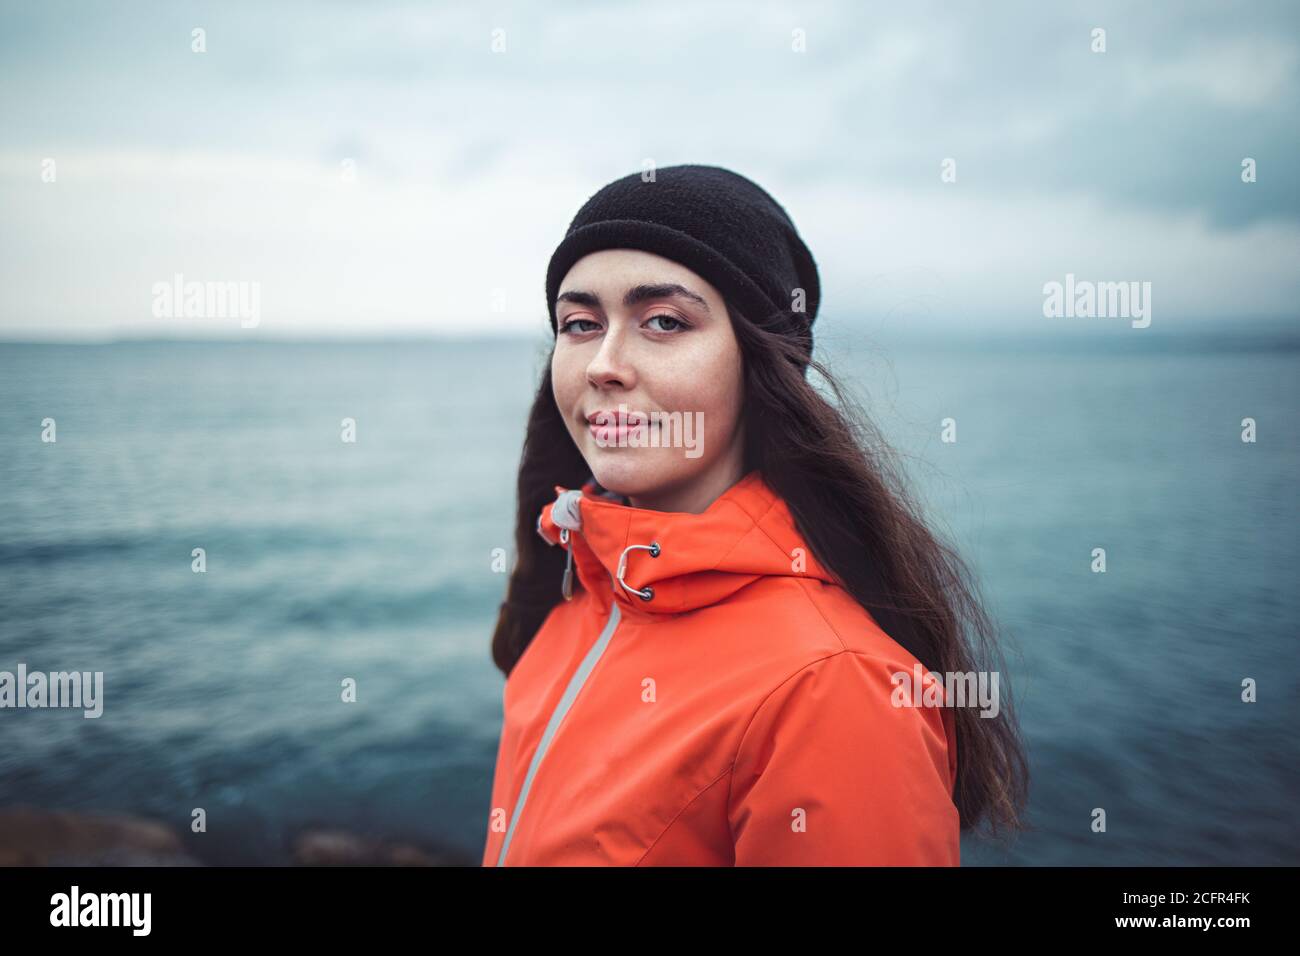 Retrato de una mujer morena sonriente con pelo largo, con un sombrero y una chaqueta naranja. En el fondo el mar y la línea del horizonte. Espacio de copia. Foto de stock